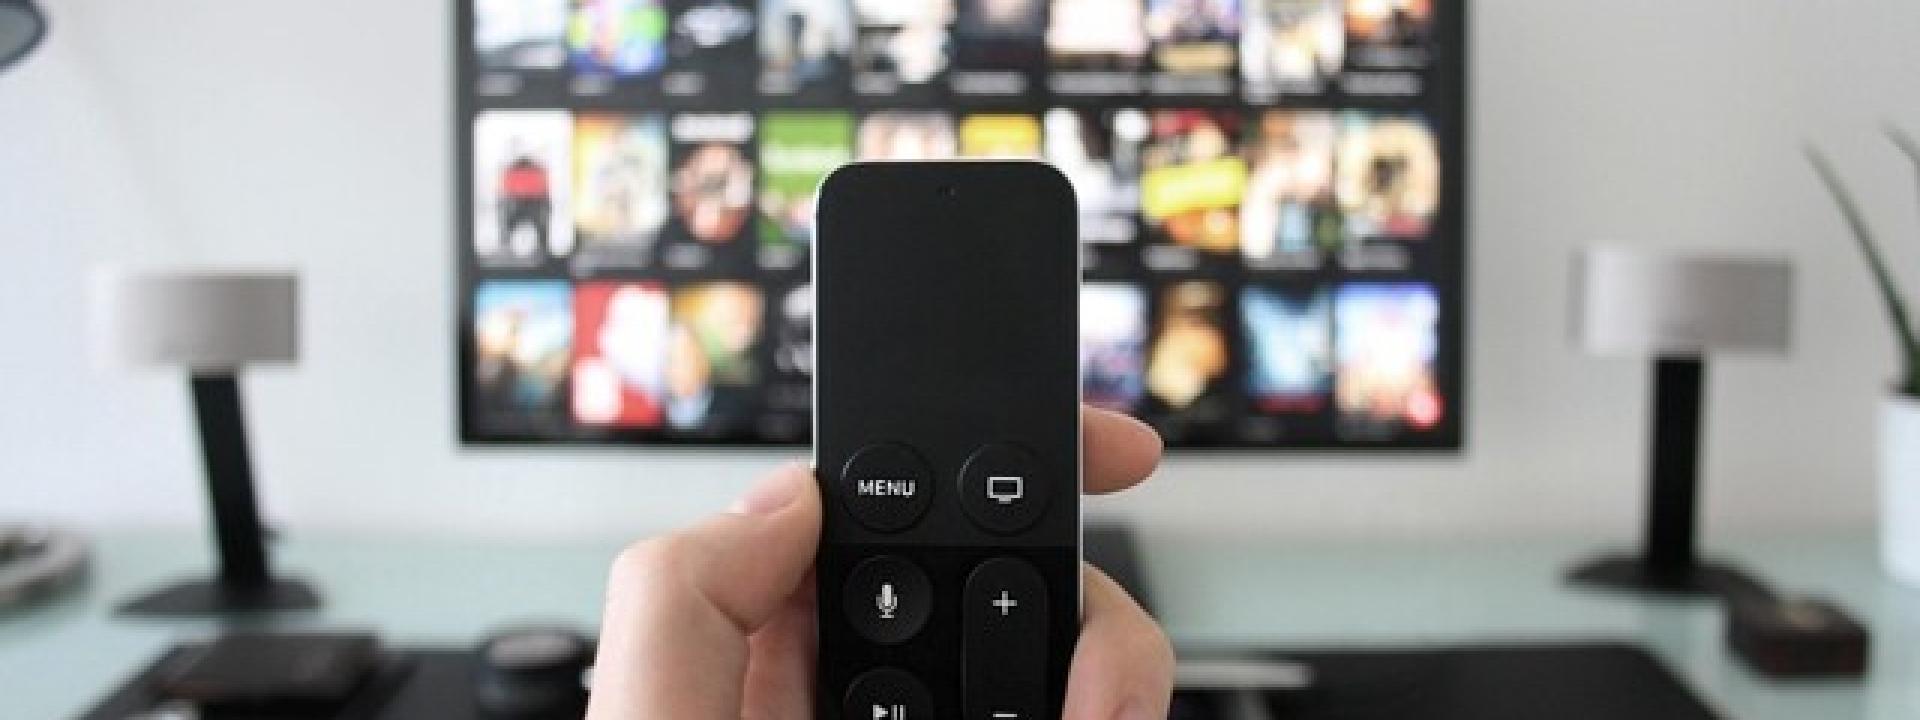 Marche, switch off digitale tra l'1 marzo e il 5 maggio: verificare le tv